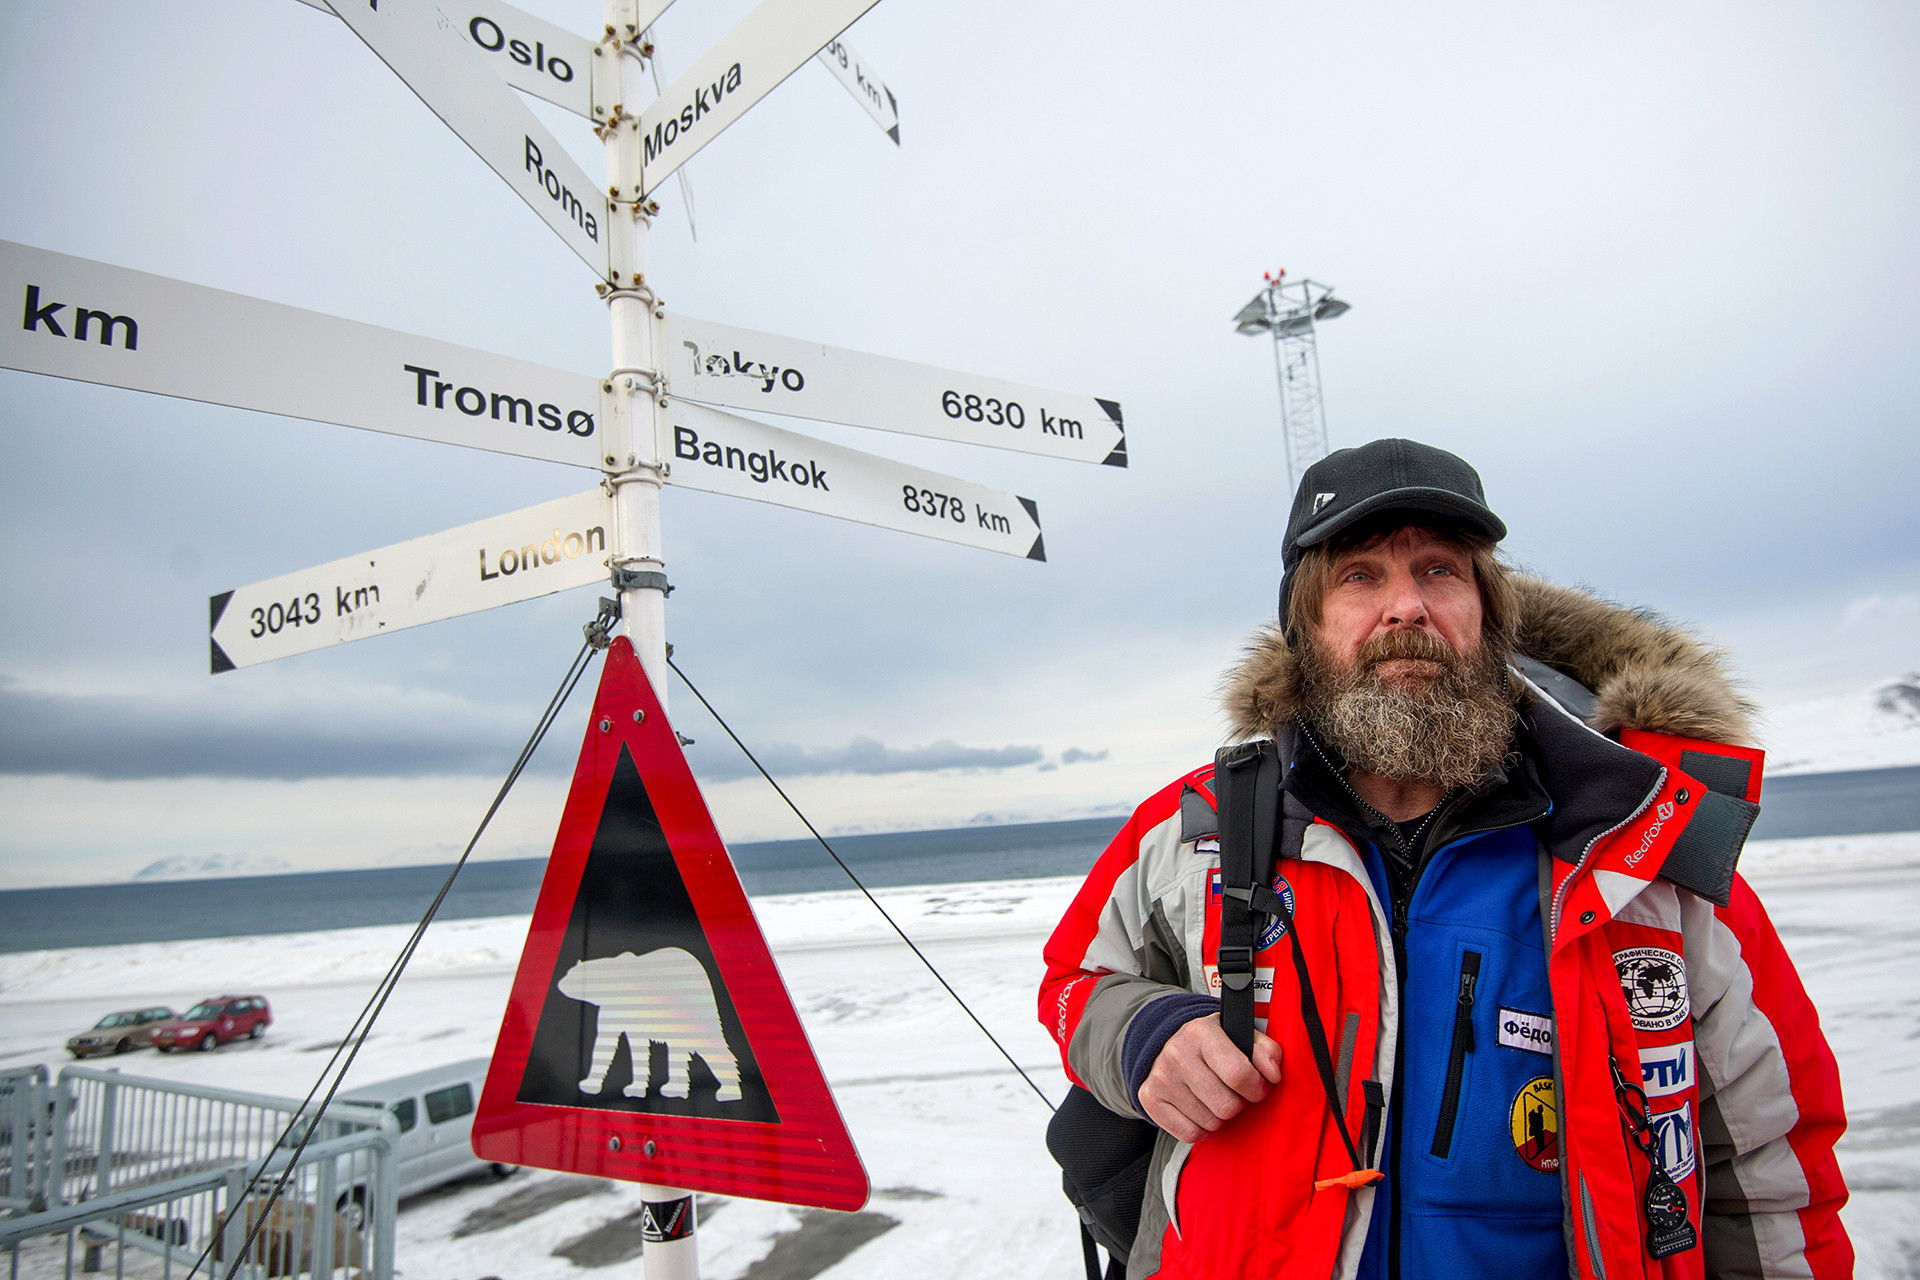 Fjodor Konjuhov na otoku Spitsbergen.

